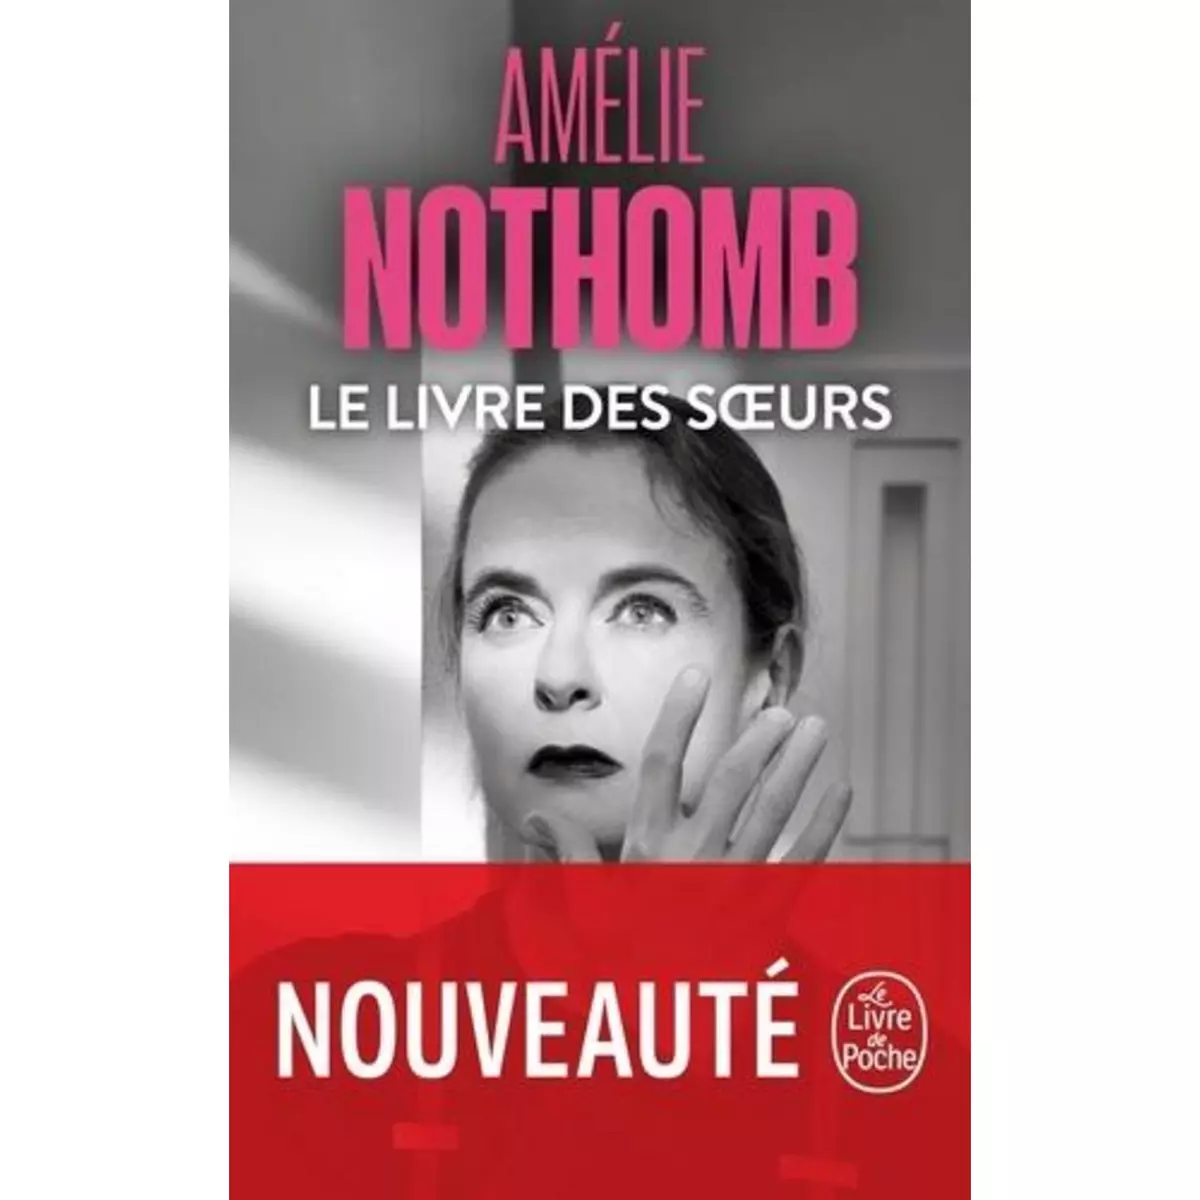  LE LIVRE DES SOEURS, Nothomb Amélie